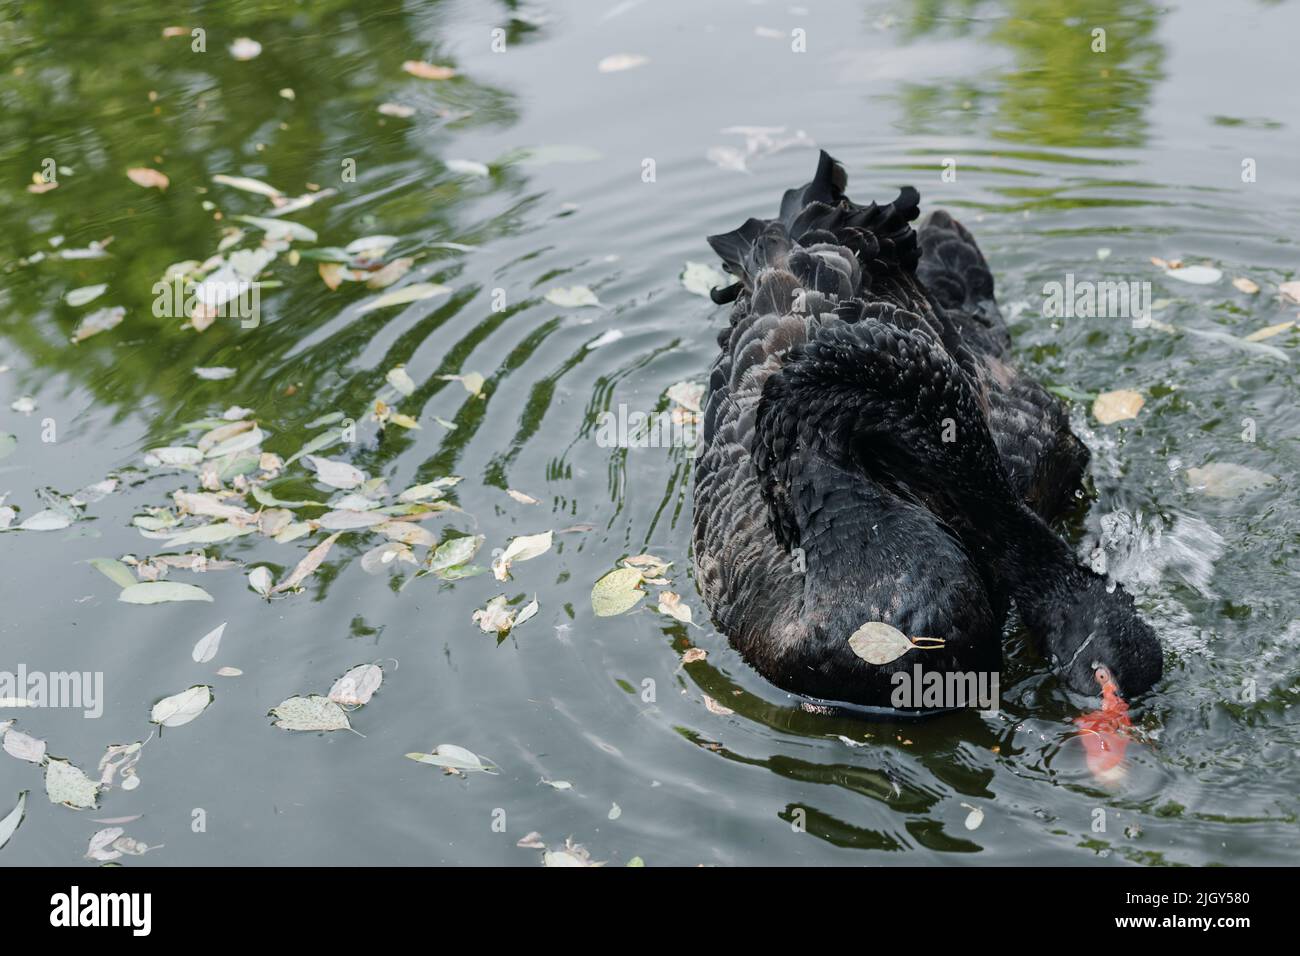 Uno splendido cigno nero che galleggia sulla superficie del lago. Foto di alta qualità Foto Stock